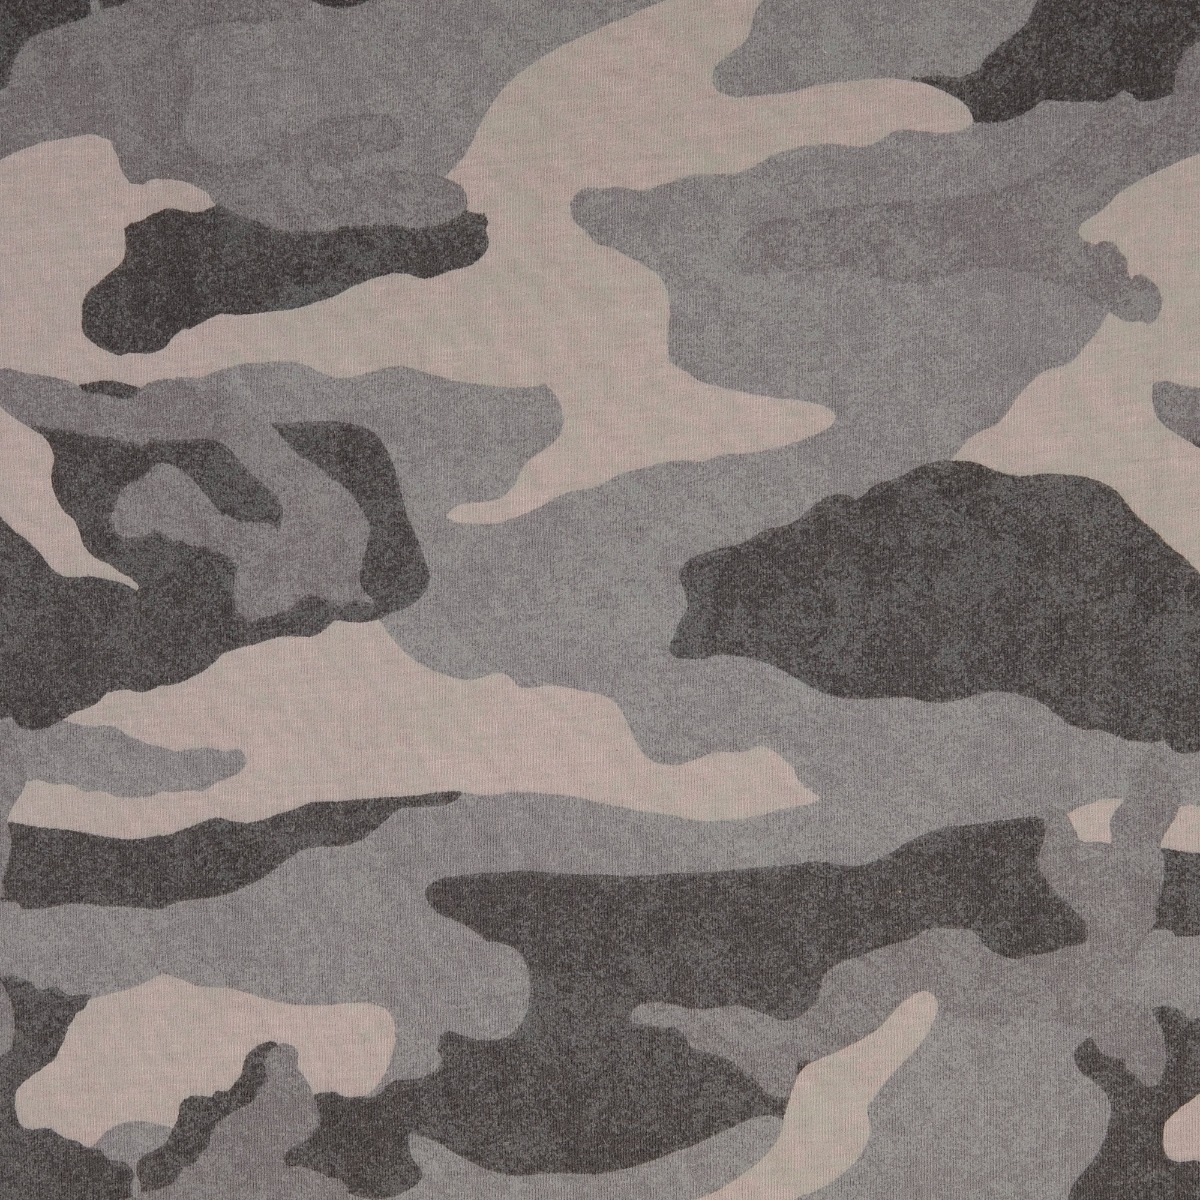 Ganzjahressweat Camouflage Grau Meliert SALE